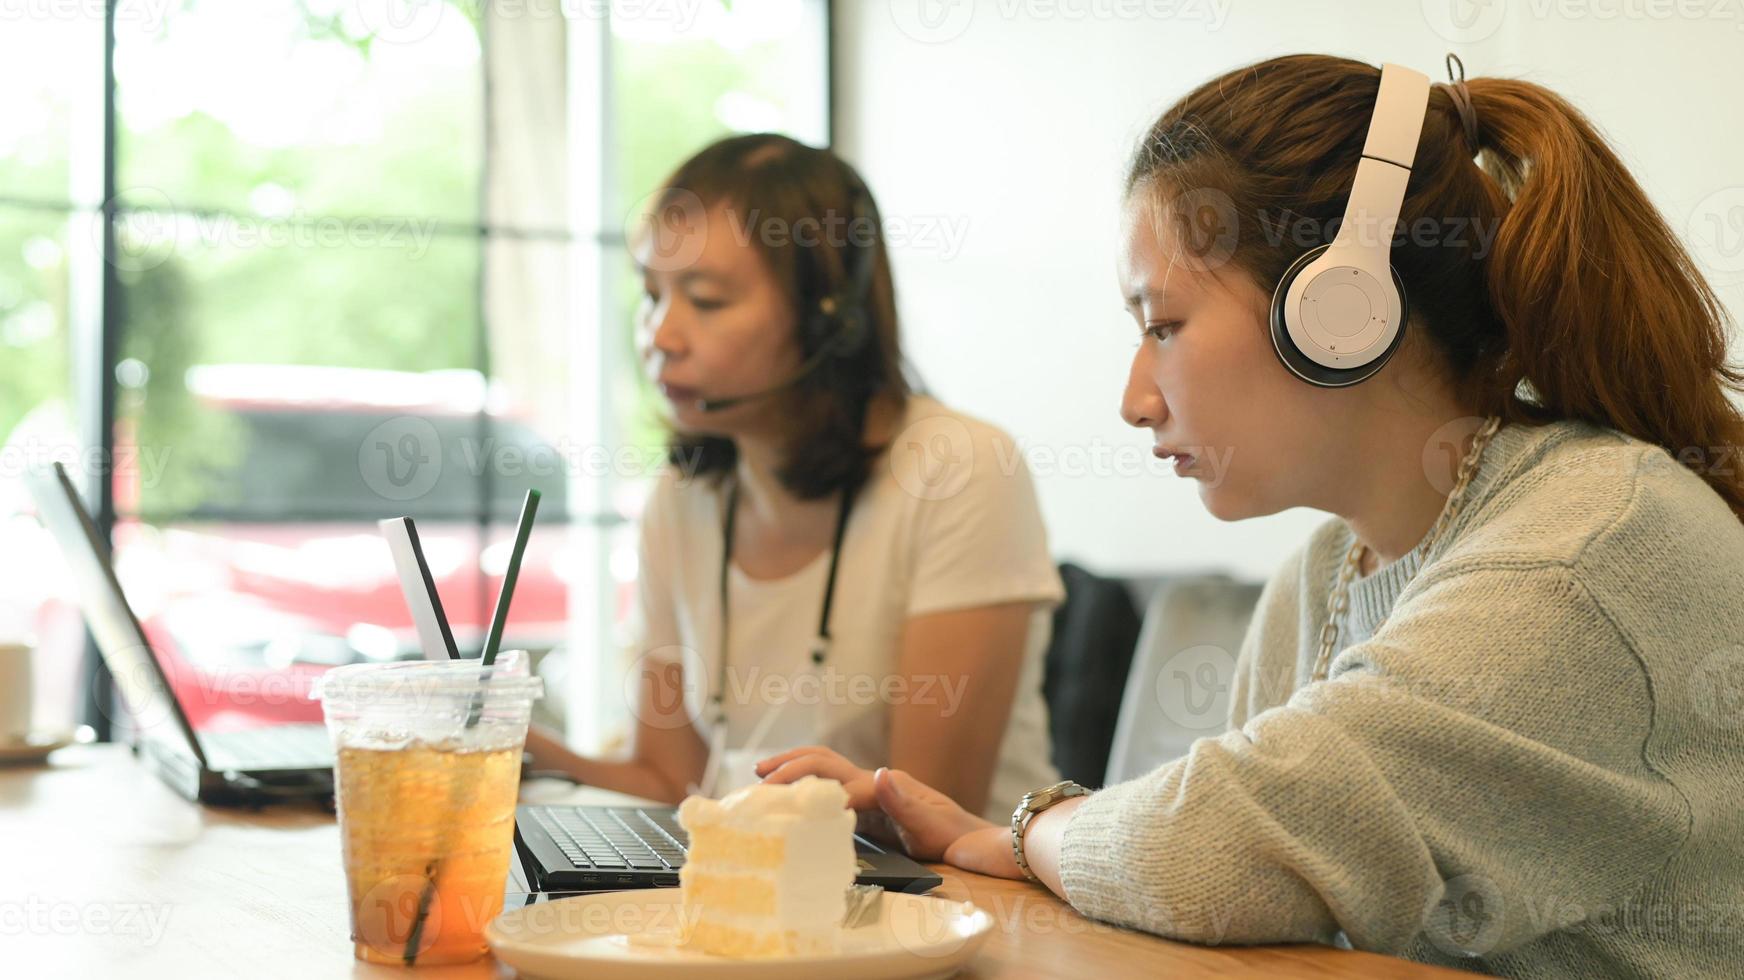 twee jonge vrouwen die hoofdtelefoons dragen die met laptops in een koffiewinkel werken. foto